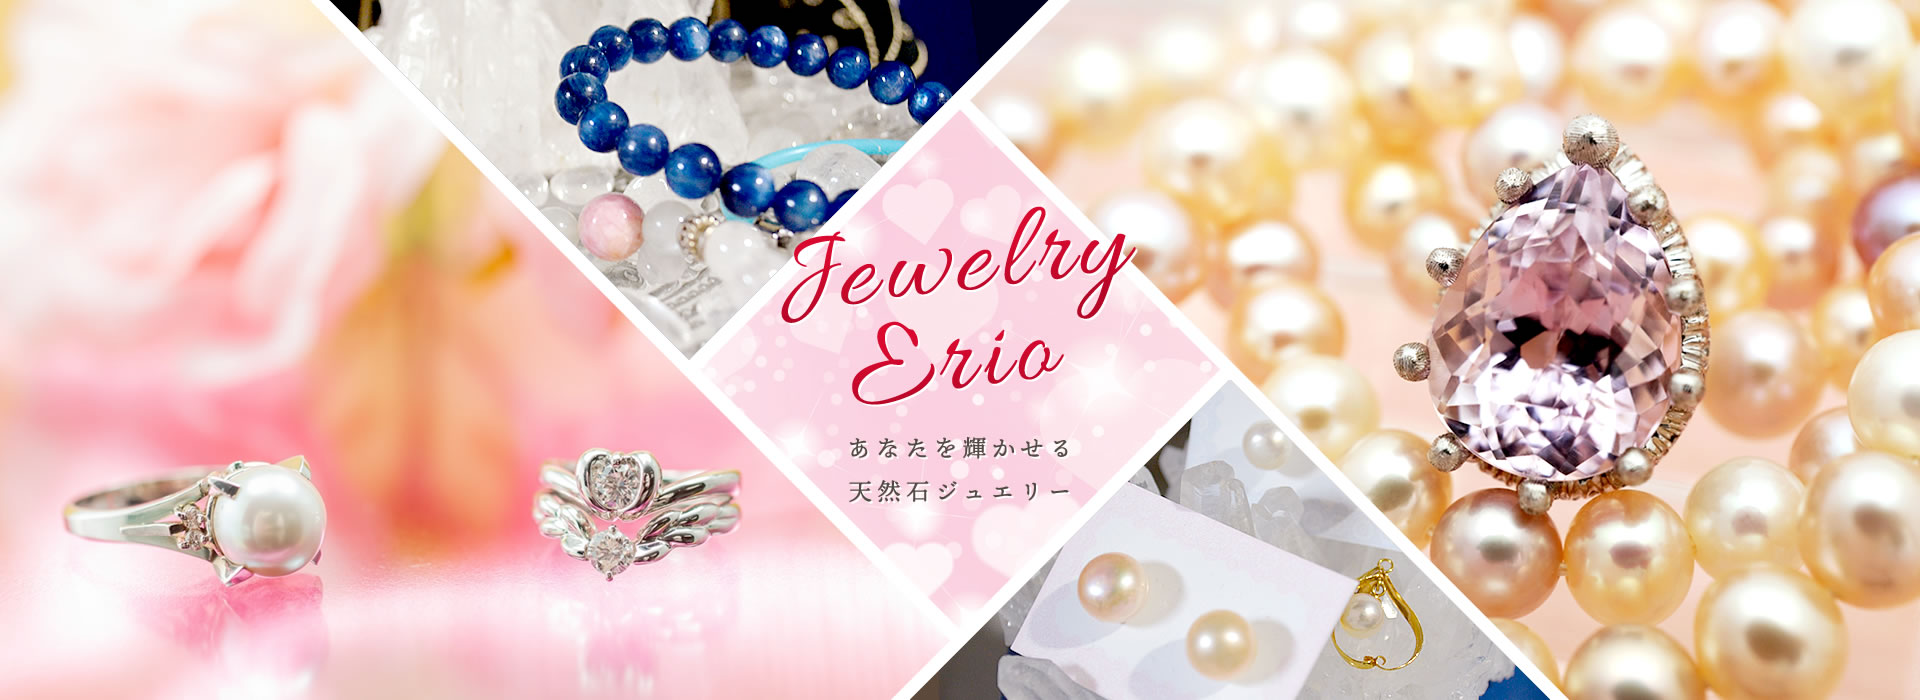 Jewelry Erio あなたを輝かせる天然石ジュエリー